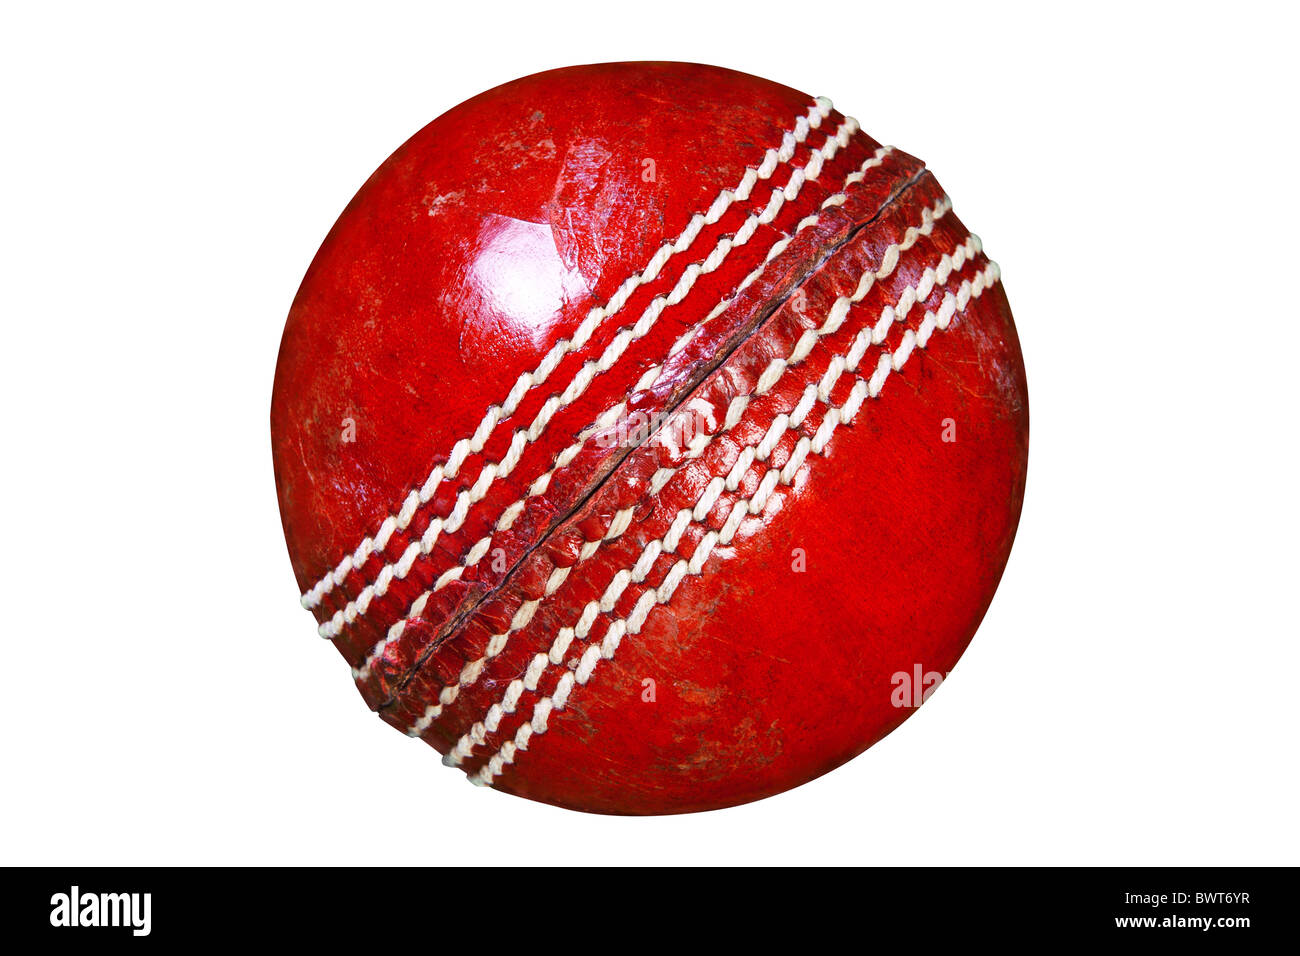 Foto di una pelle rossa sfera di cricket isolato su sfondo bianco con percorso di clipping fatto utilizzando lo strumento penna. Foto Stock